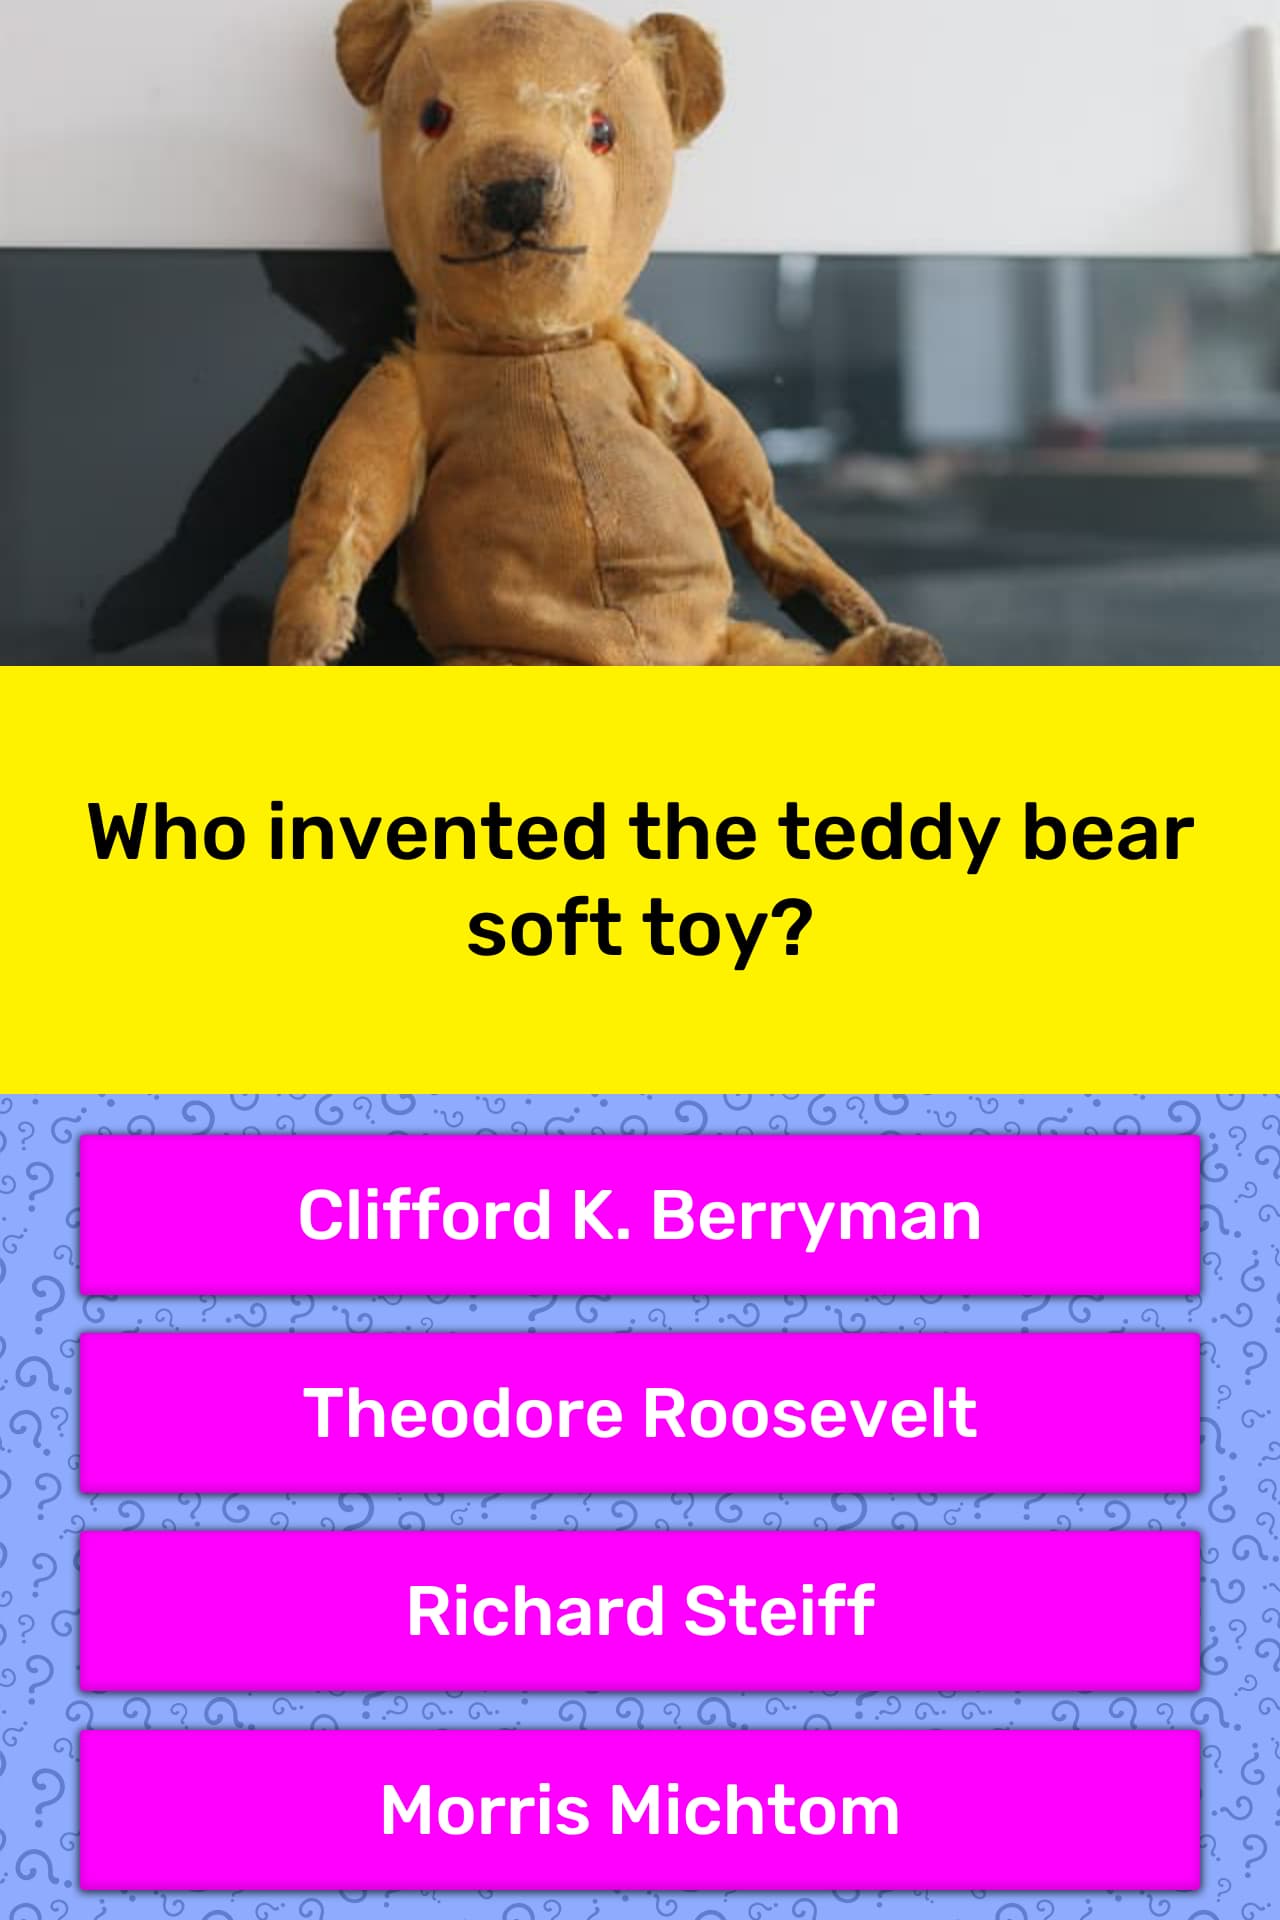 michtom teddy bear